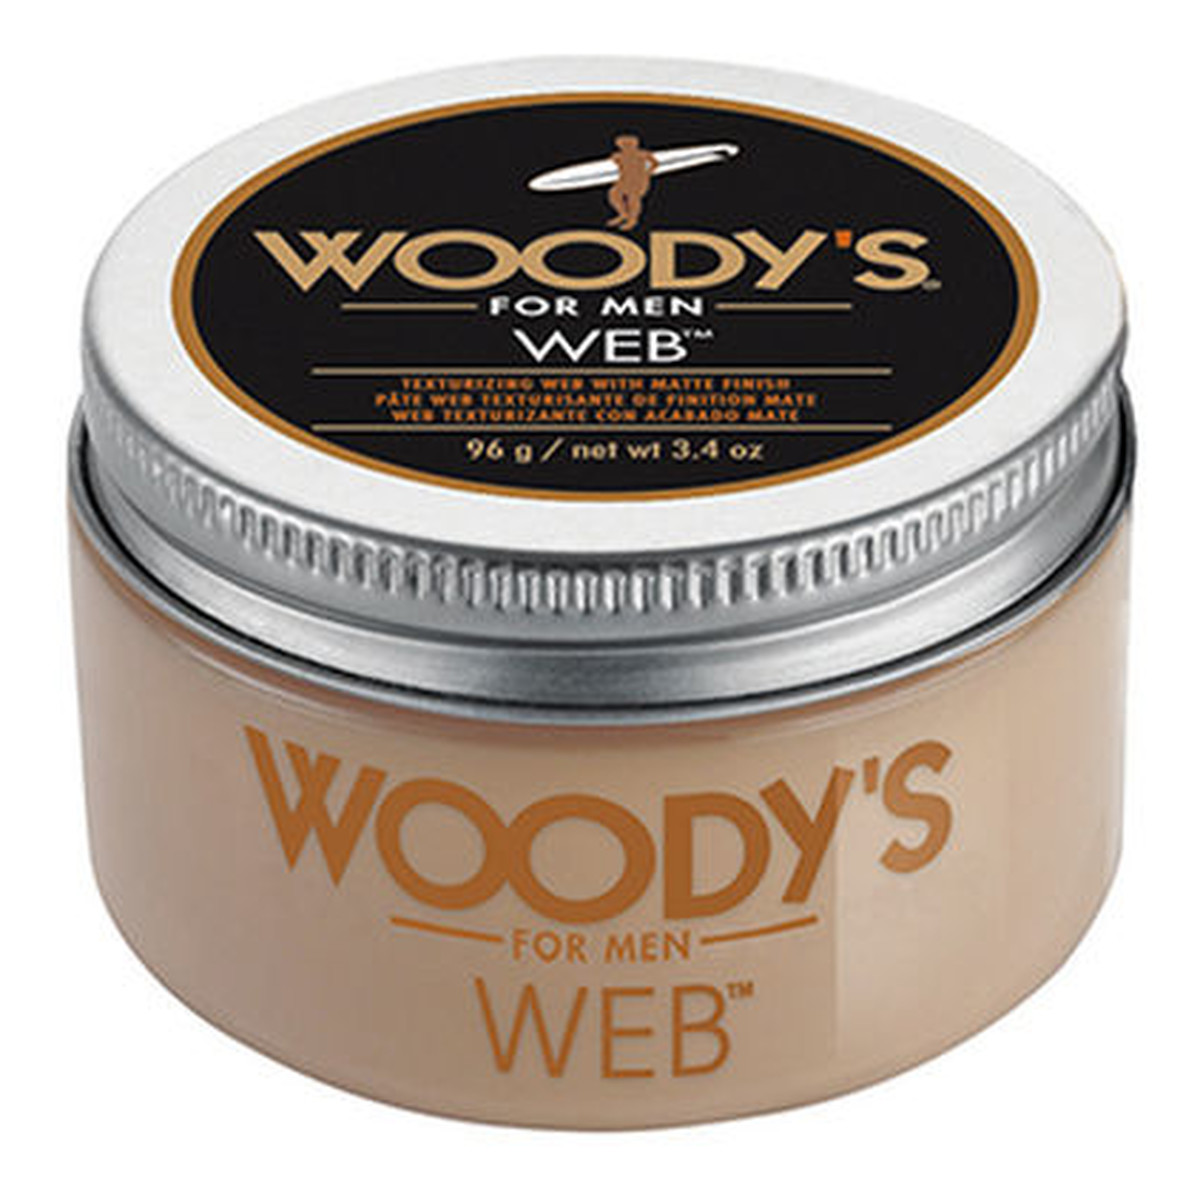 Woody’s Web nowoczesna pasta do kreatywnej stylizacji włosów 96g